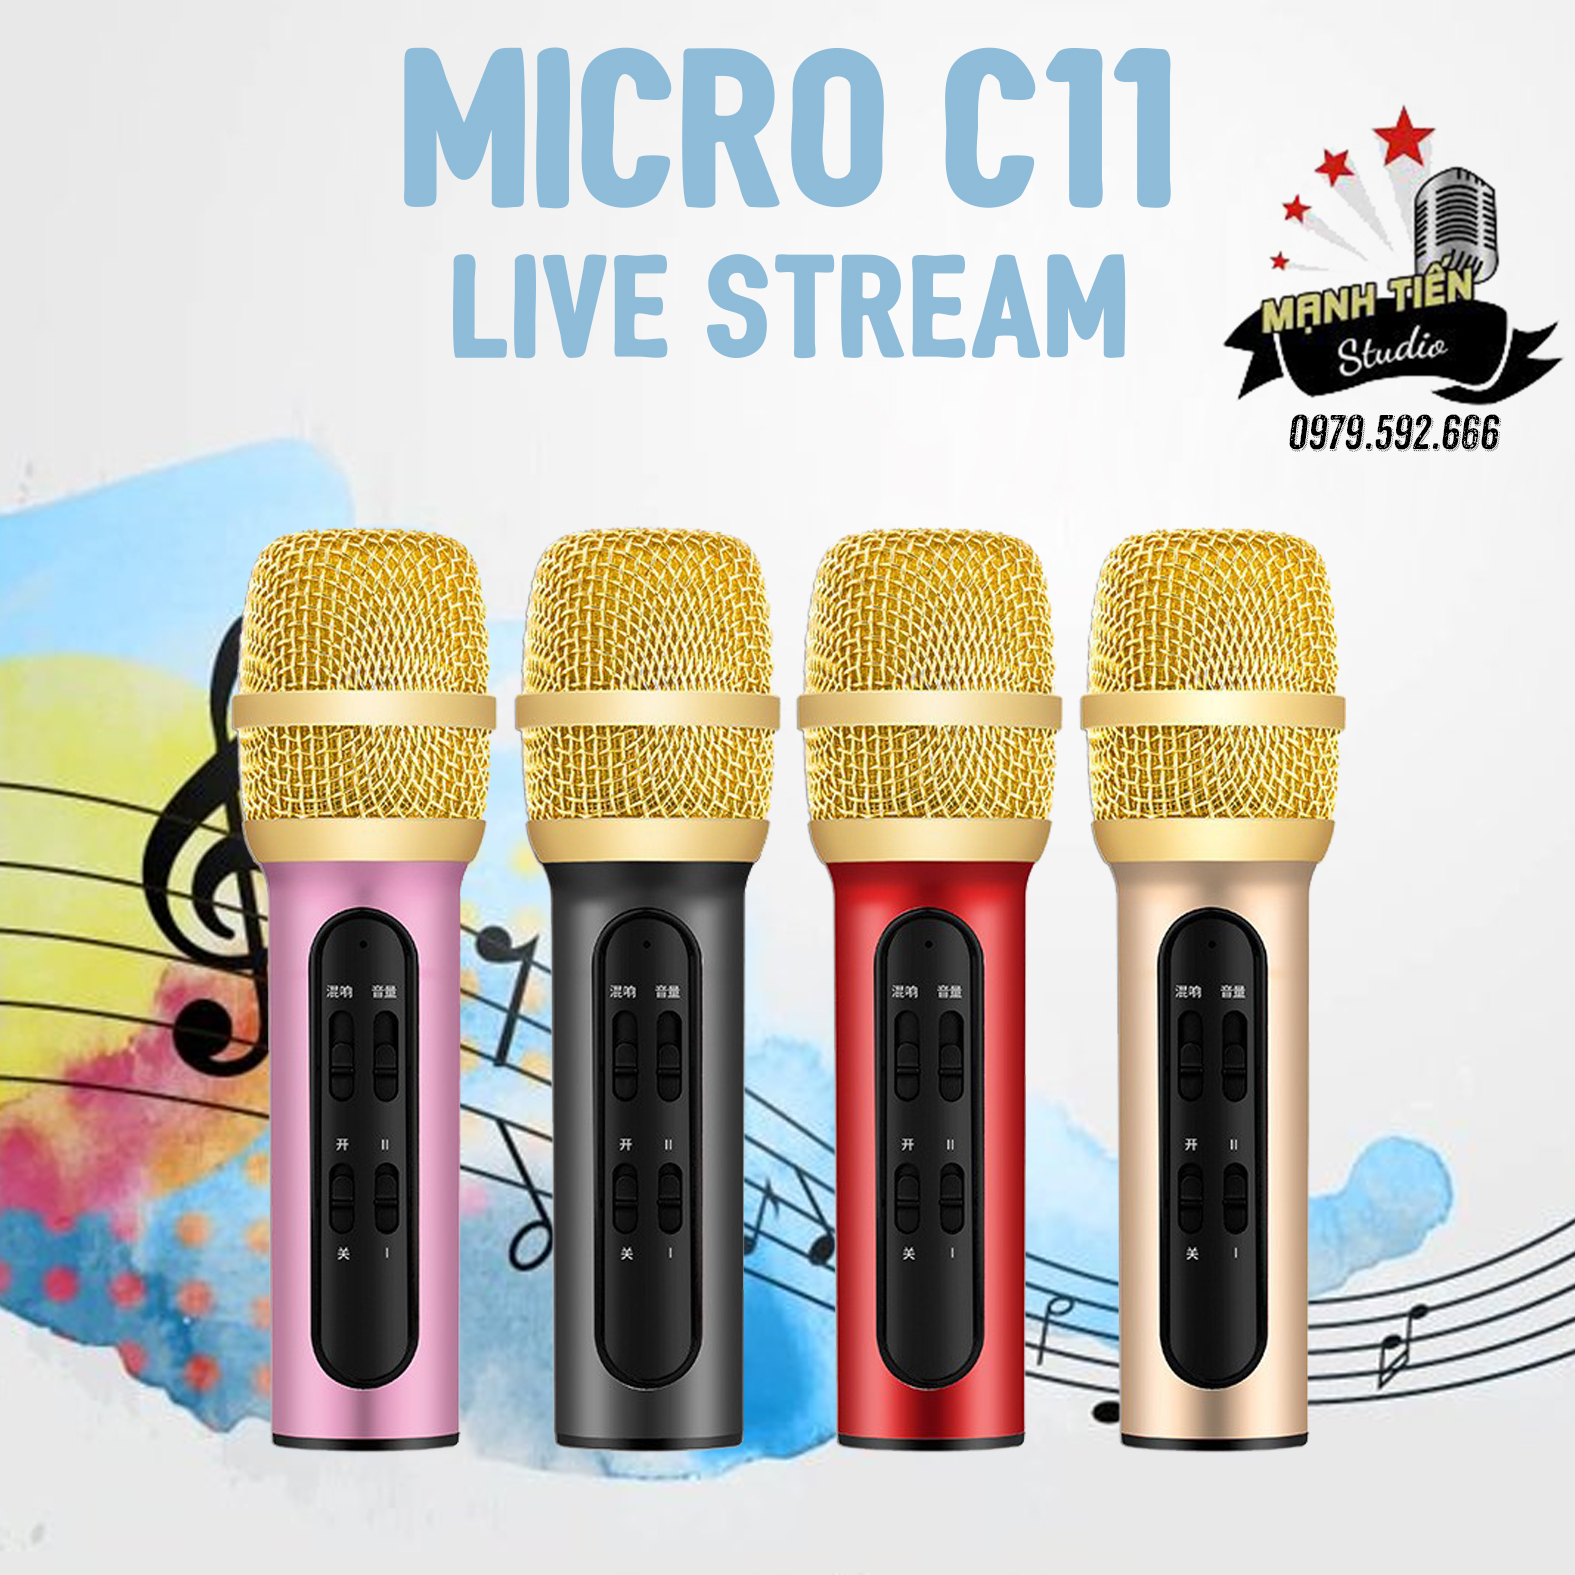 [Giá sock]Micro live stream C11, chân kẹp micro mini, giá đỡ 2 điện thoại - Bộ combo livestream, thu âm, karaoke online trên facebook, bigo, cctalk tiện lợi, dễ sử dụng, đầy đủ phụ kiện - Tặng kèm tai nghe nhét tai - Bảo hành 12 tháng